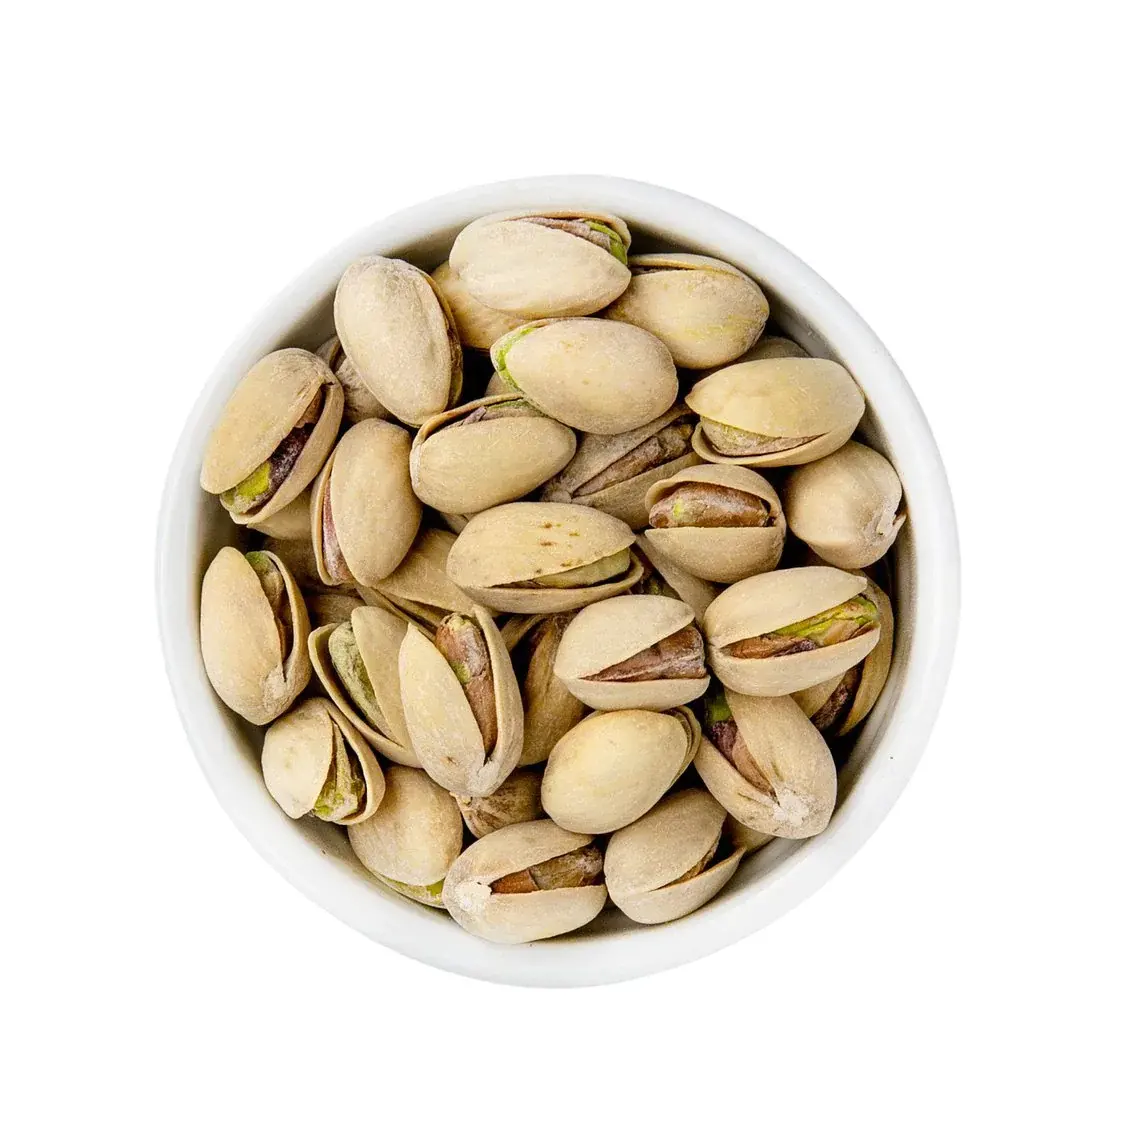 Grosir kacang makanan ringan kacang pistacios/pistacios organik kering mentah